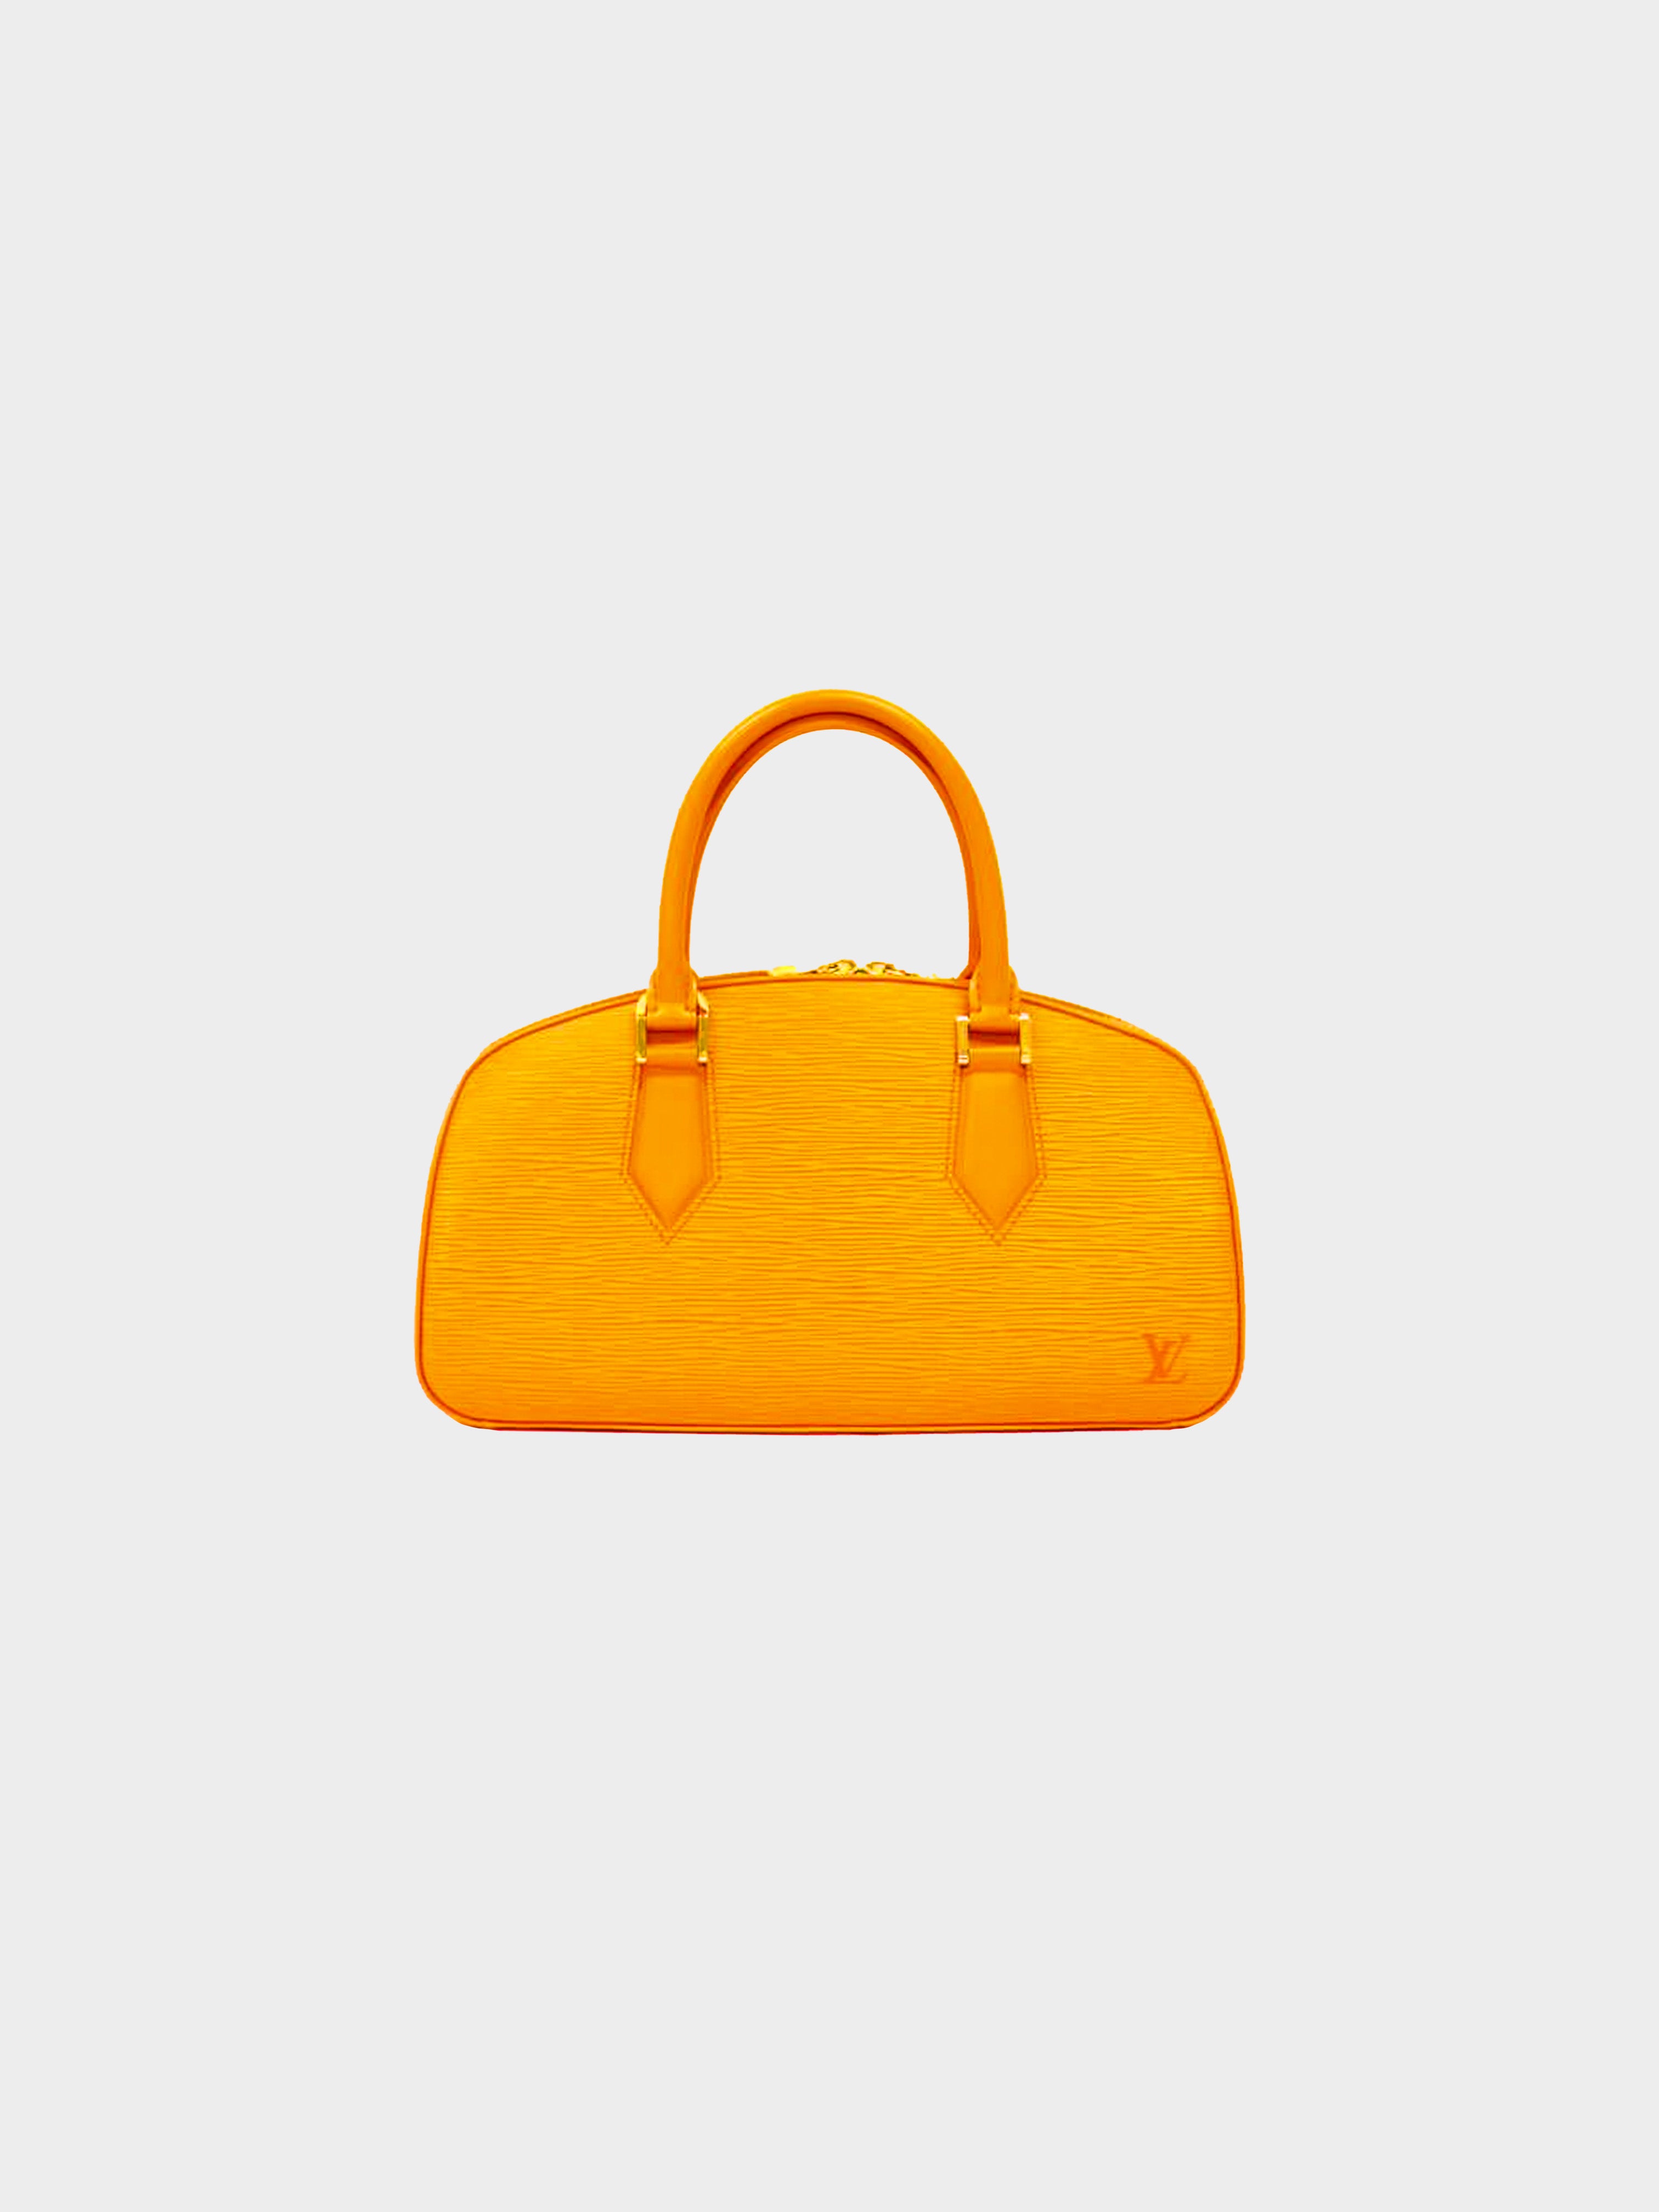 orange and white louis vuitton bag